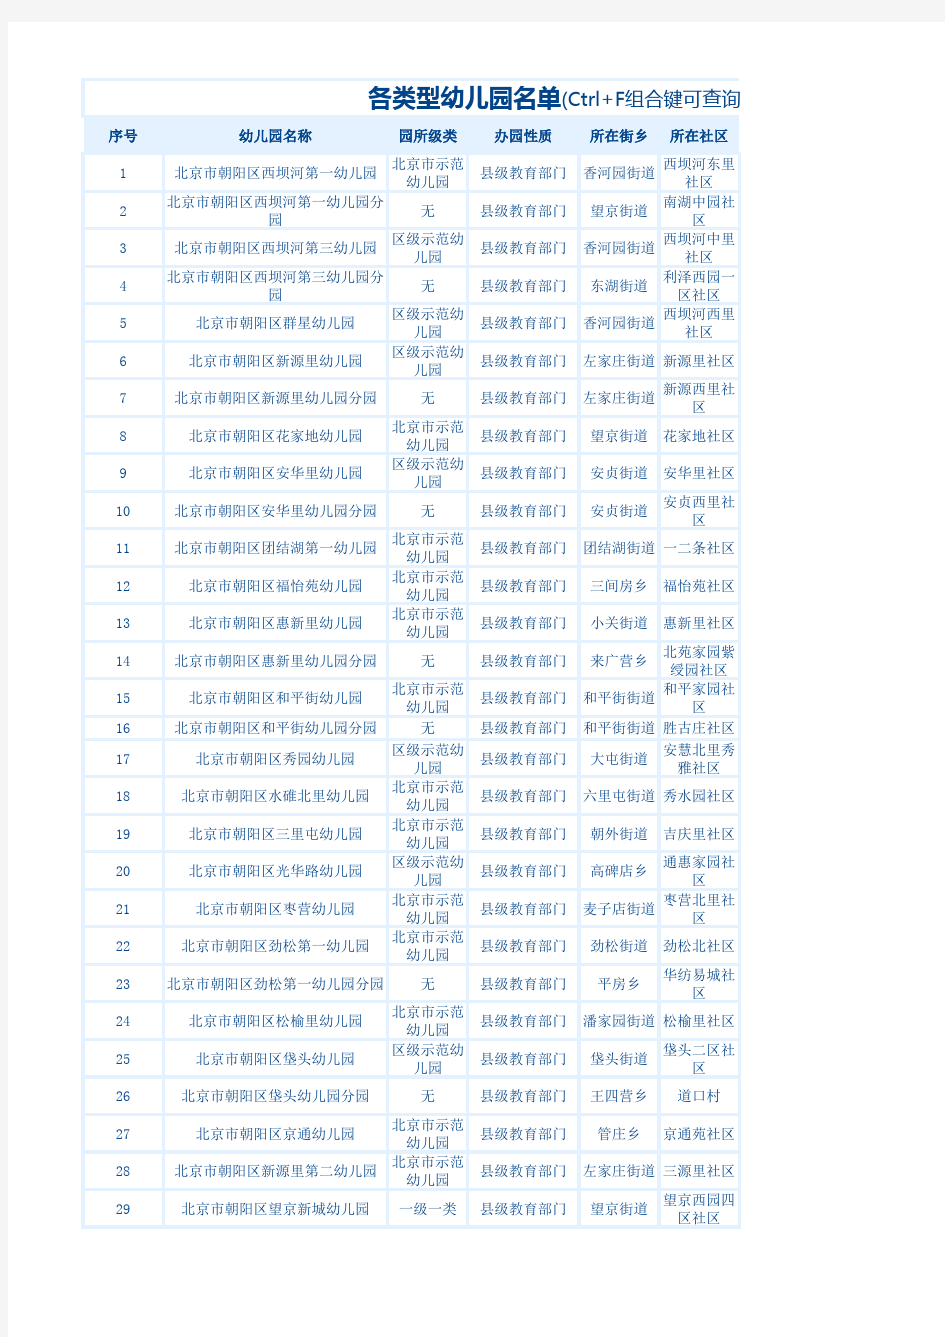 北京市朝阳区各类型幼儿园名单及收费(2017)